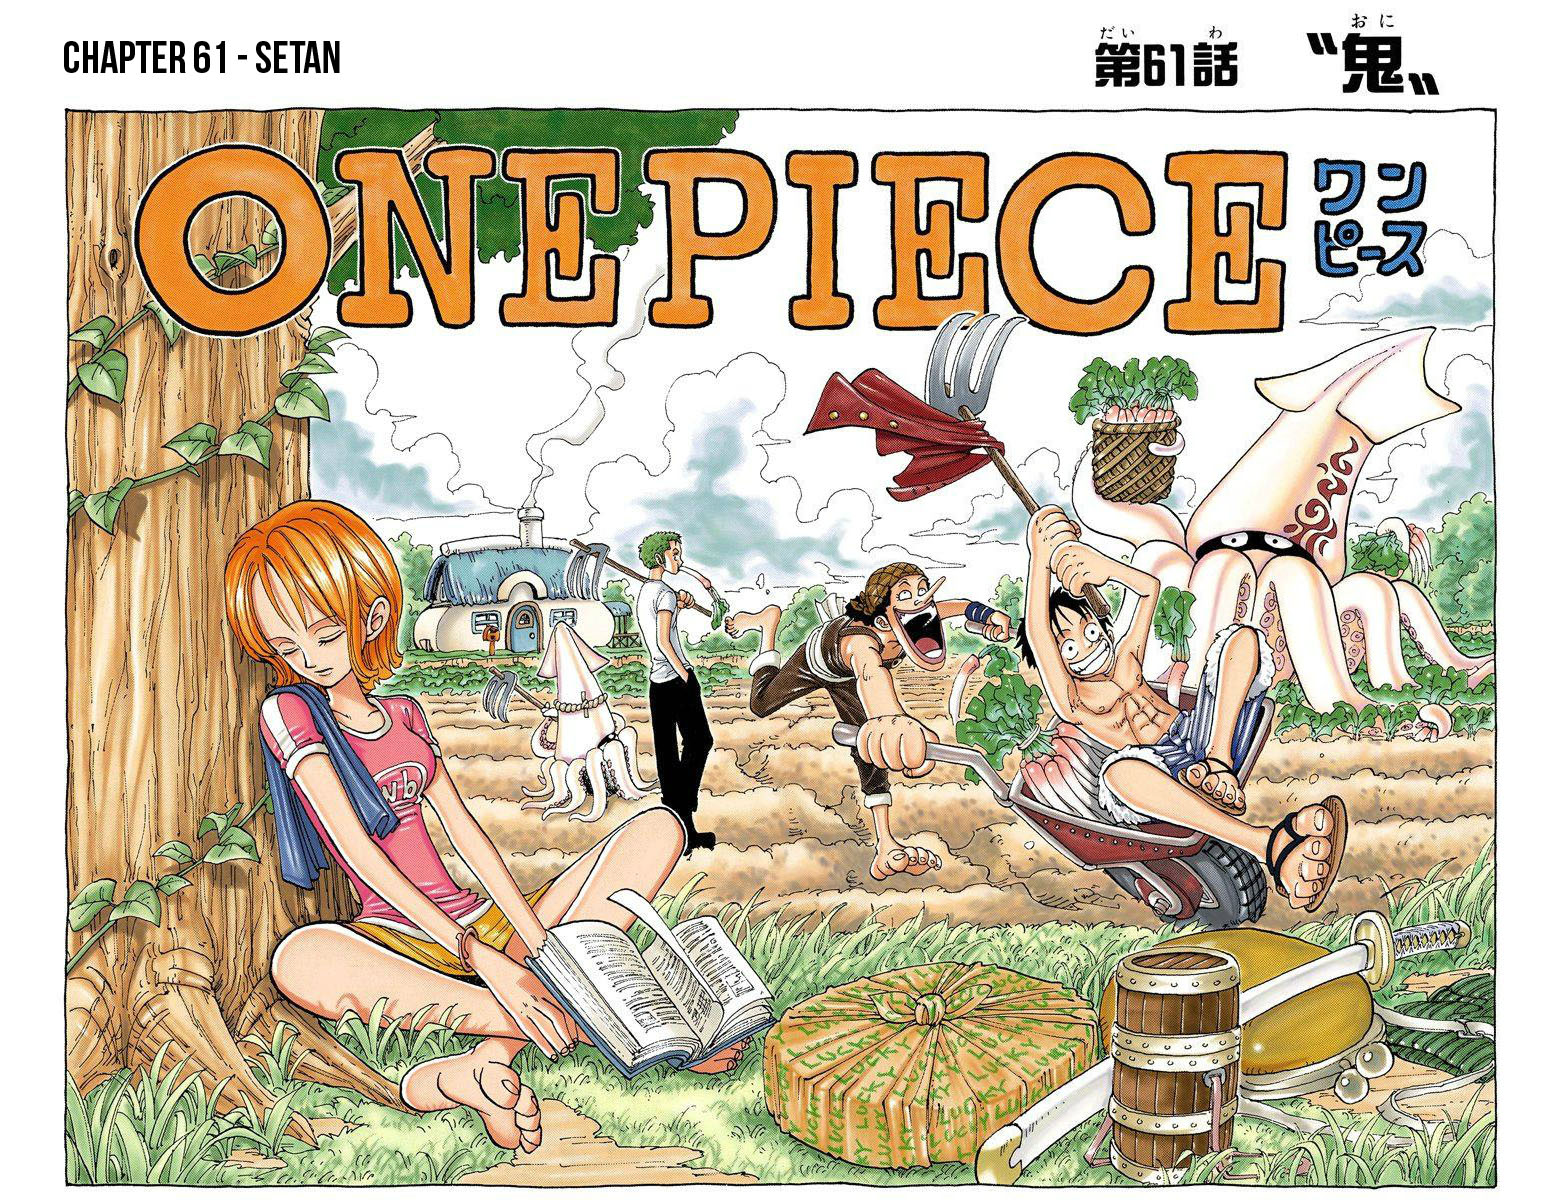 One Piece Berwarna Chapter 61